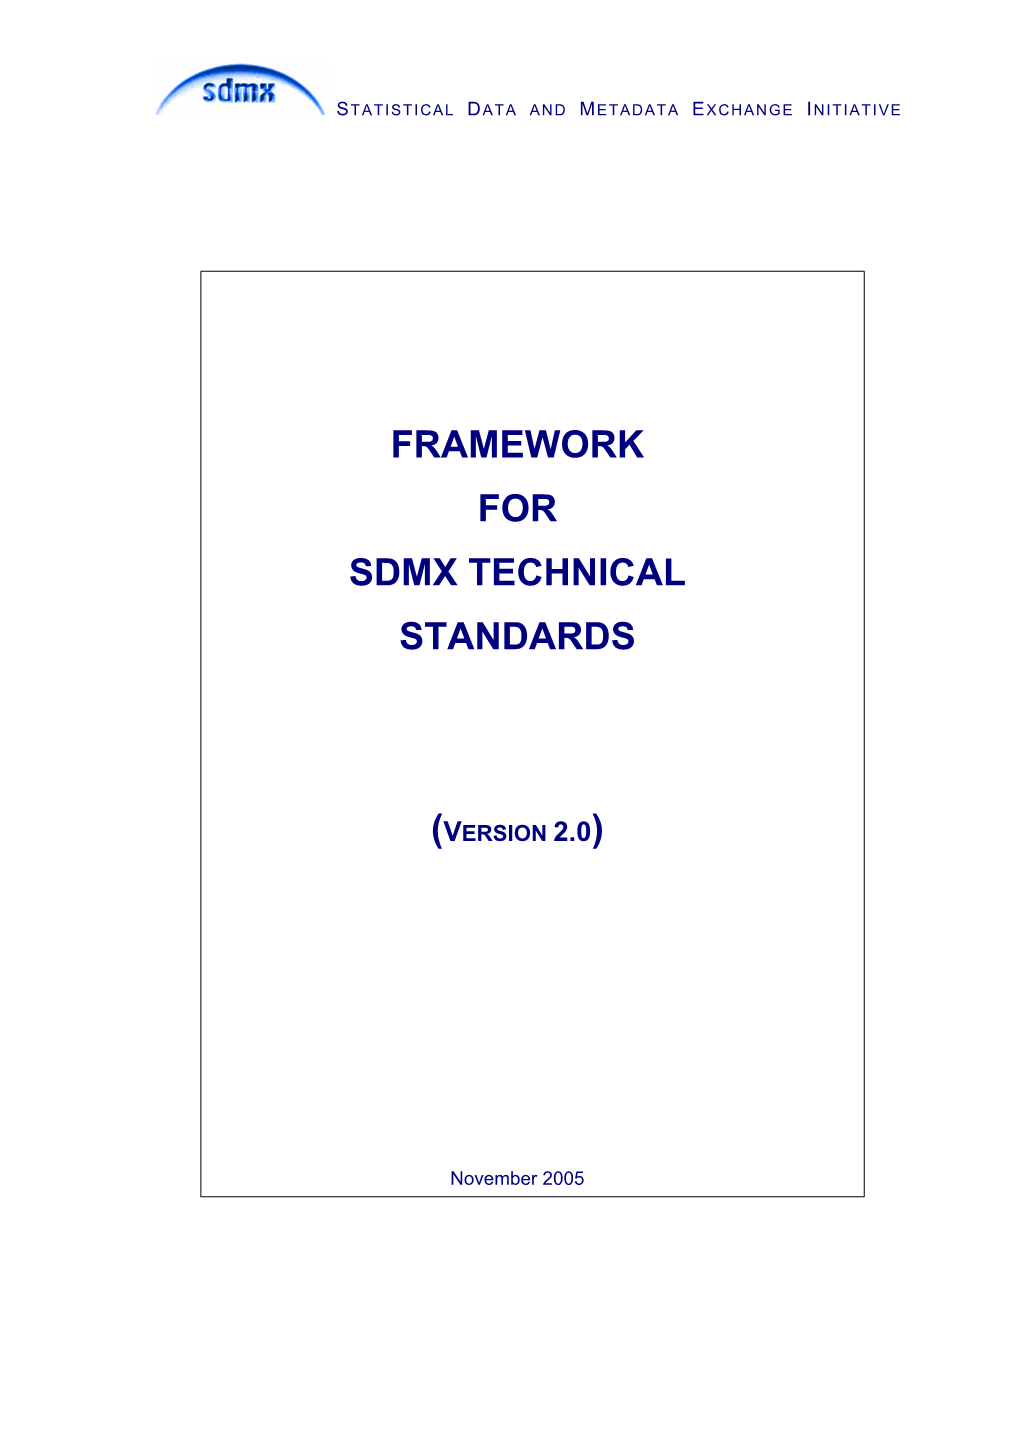 Framework for Sdmx Technical Standards